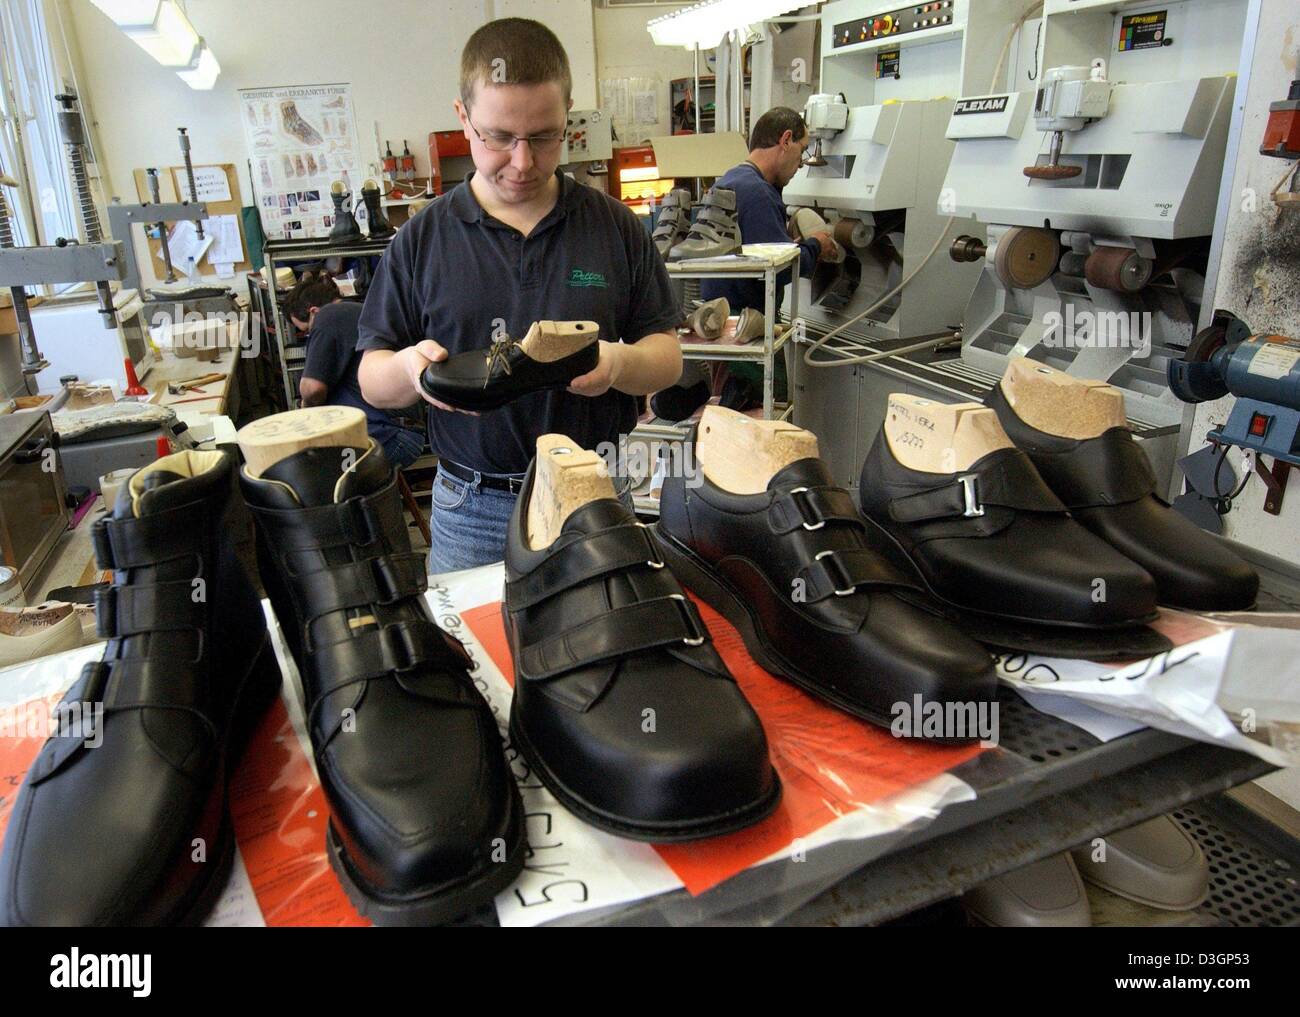 Dpa) - Alexander Brandt (C), técnico en calzado ortopédico, examina un  zapato mientras está parado en el taller de Petters opina Schuh GmbH,  fabricante de calzado ortopédico, en Gera, Alemania, 22 de